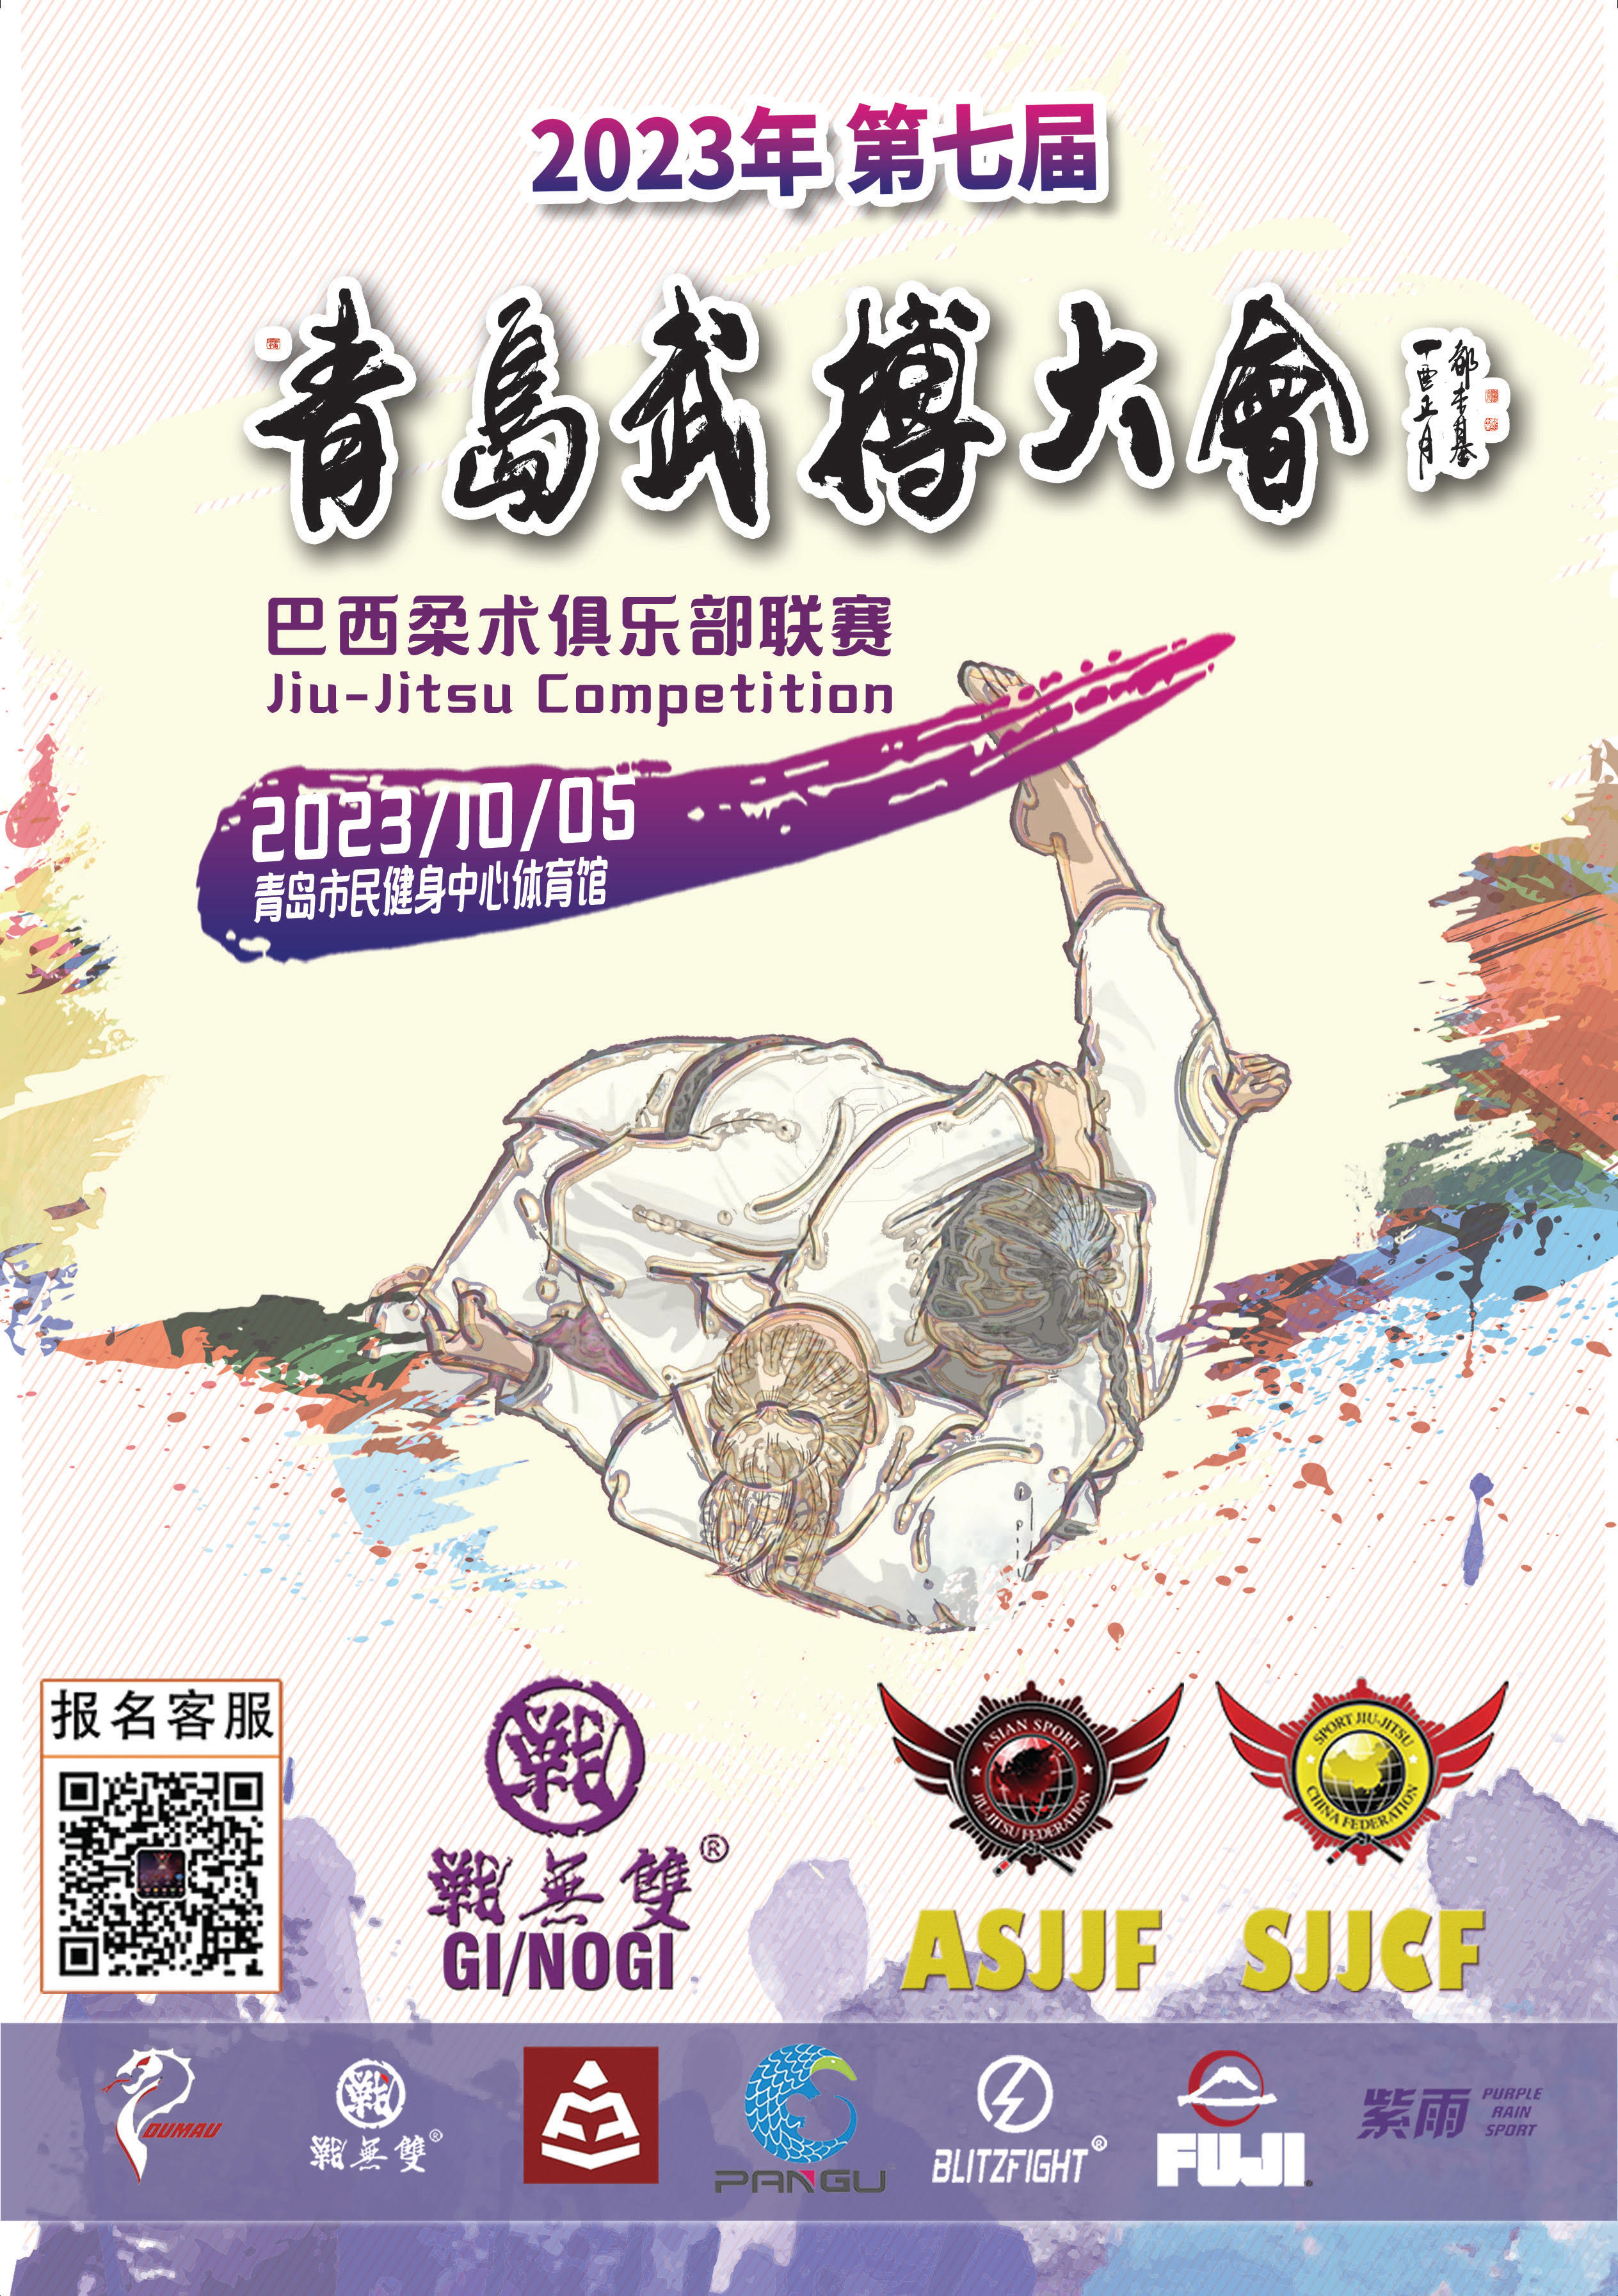 Qingdao Jiu Jitsu Championship 2023